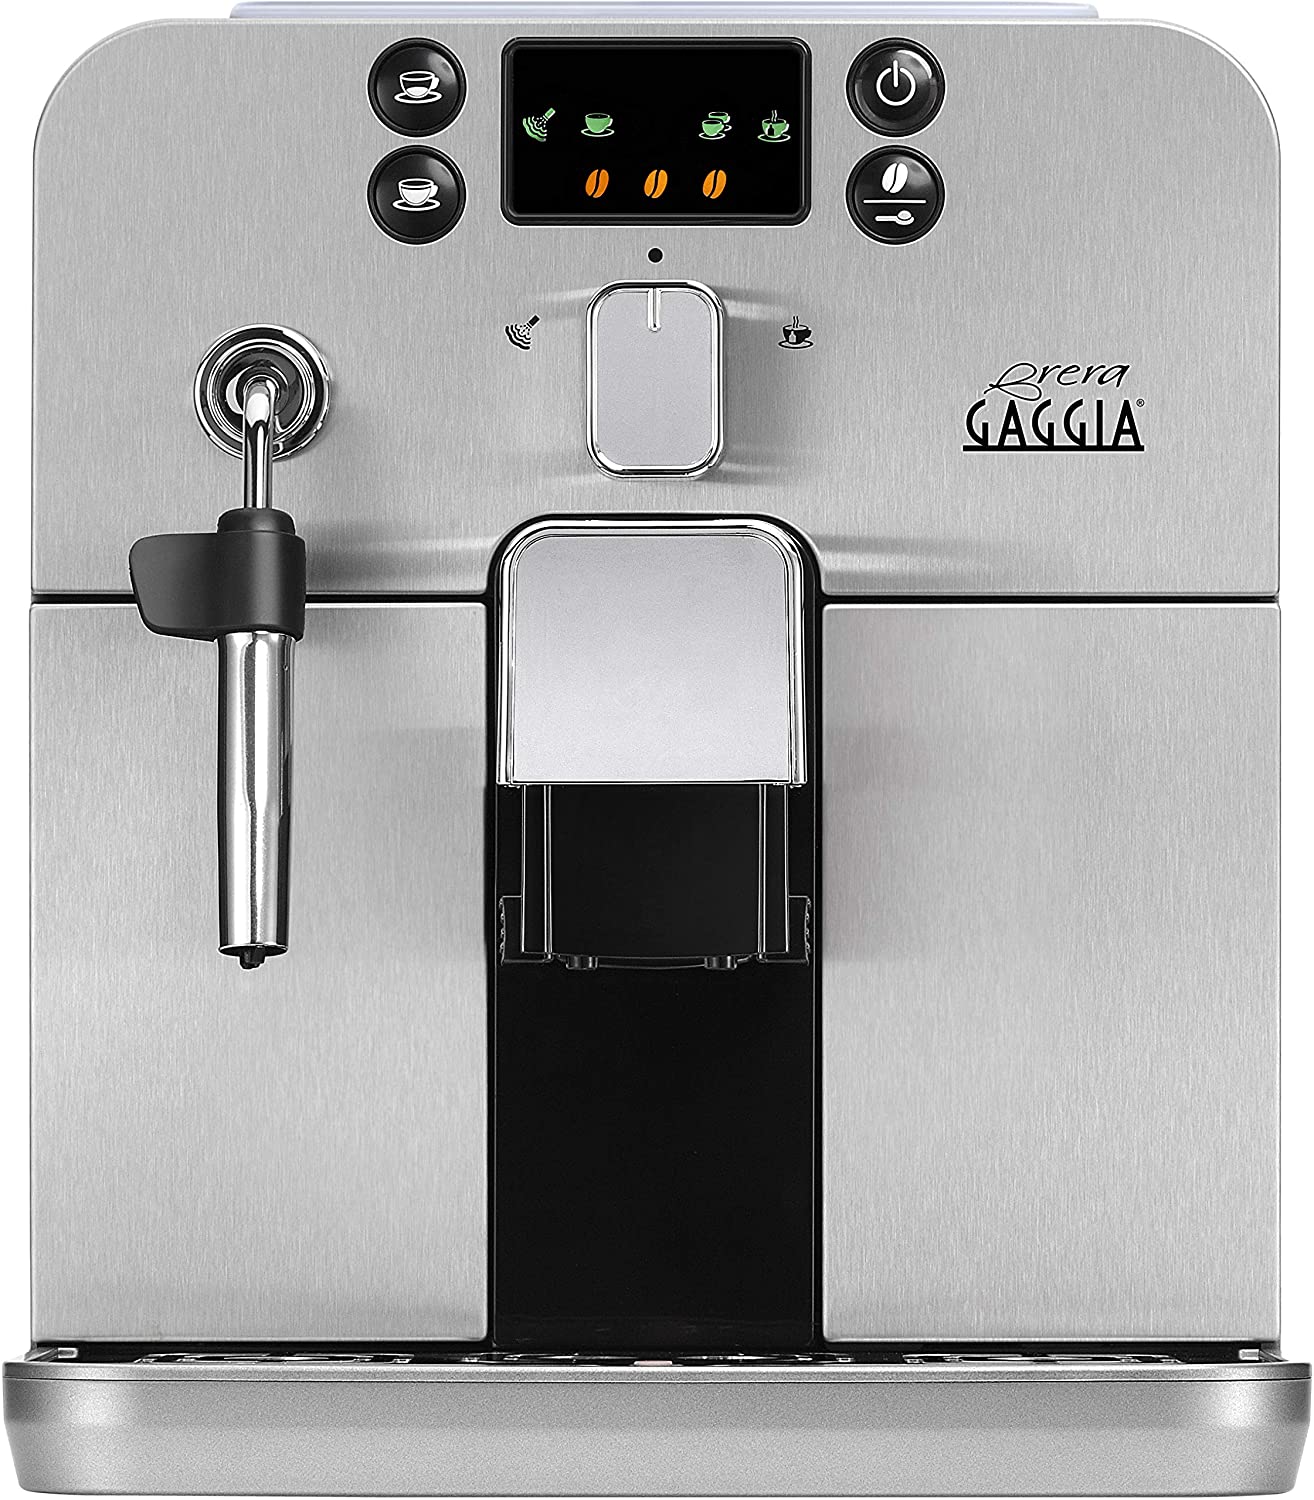 Gaggia RI9305 / 01 Coffee machine Brera (steam nozzle) silver